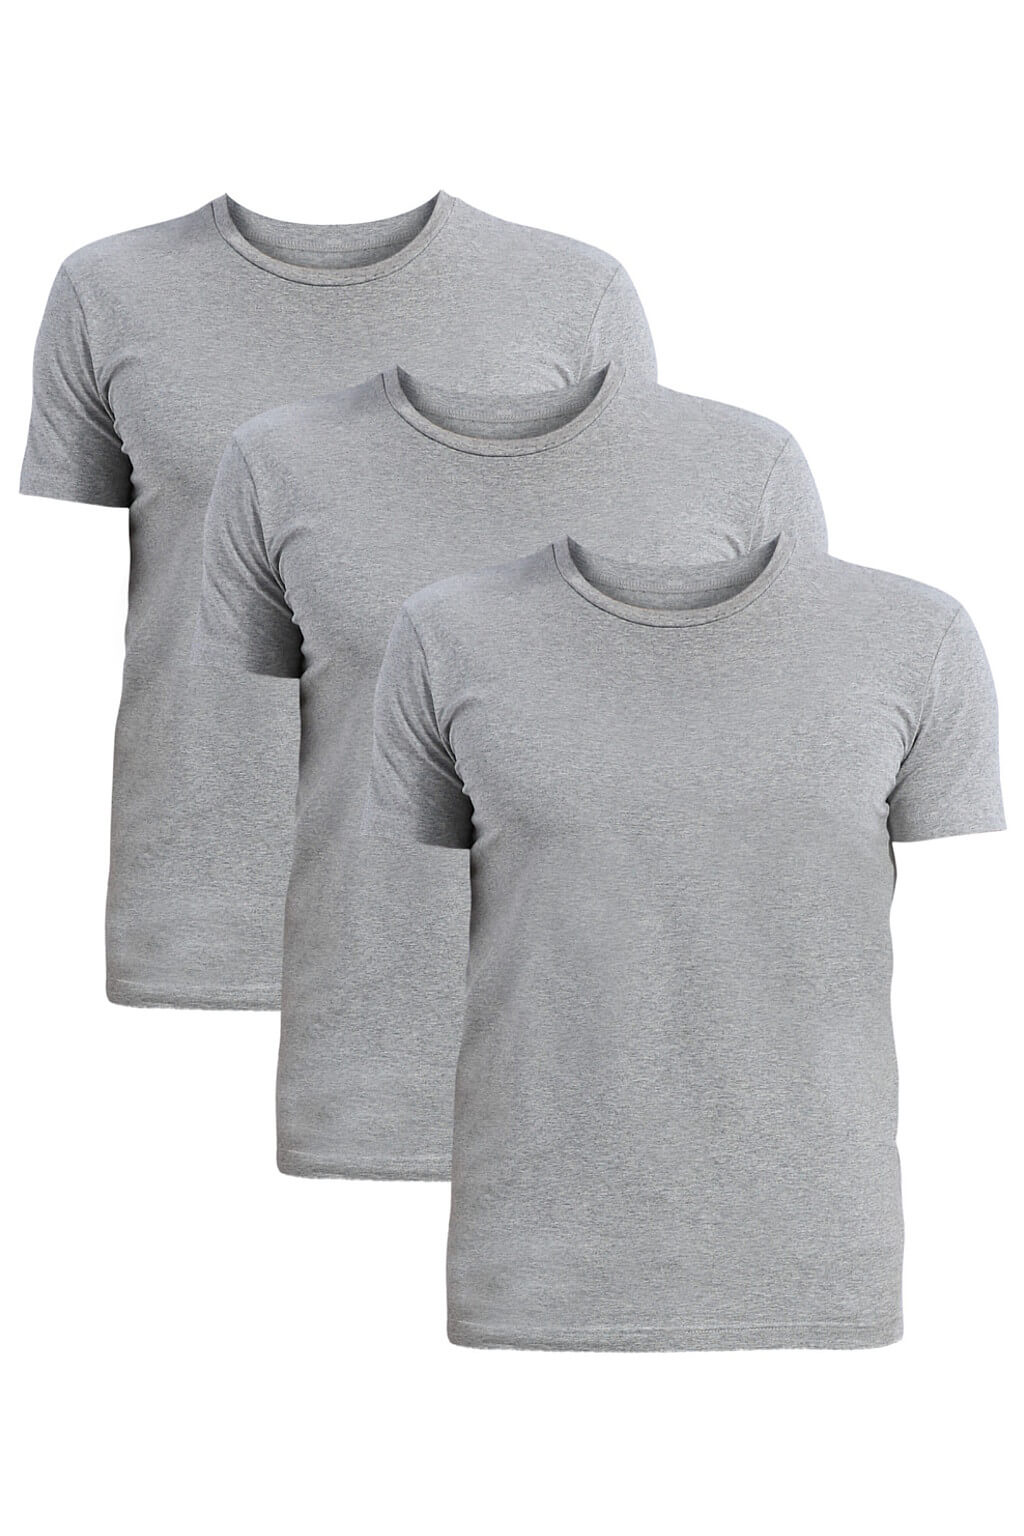 Tezen kvalitní pánské triko do 'U' FTU01 - trojbal L šedá